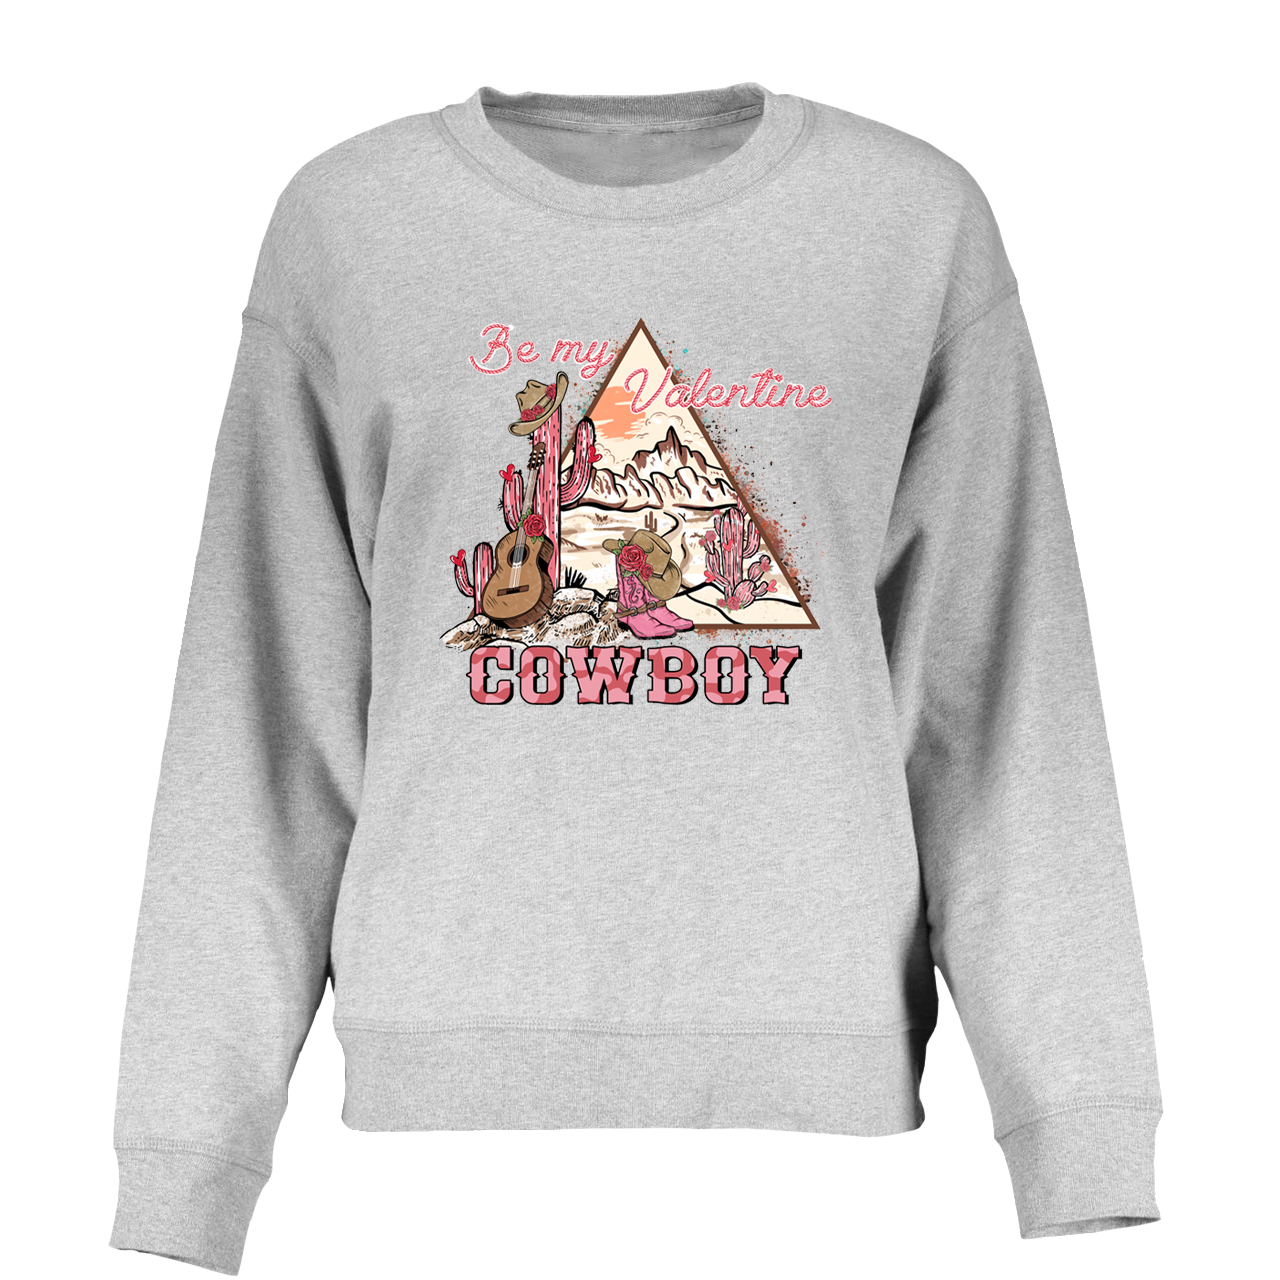 [Copy]Wild Heart Valentine Boots Sweatshirt